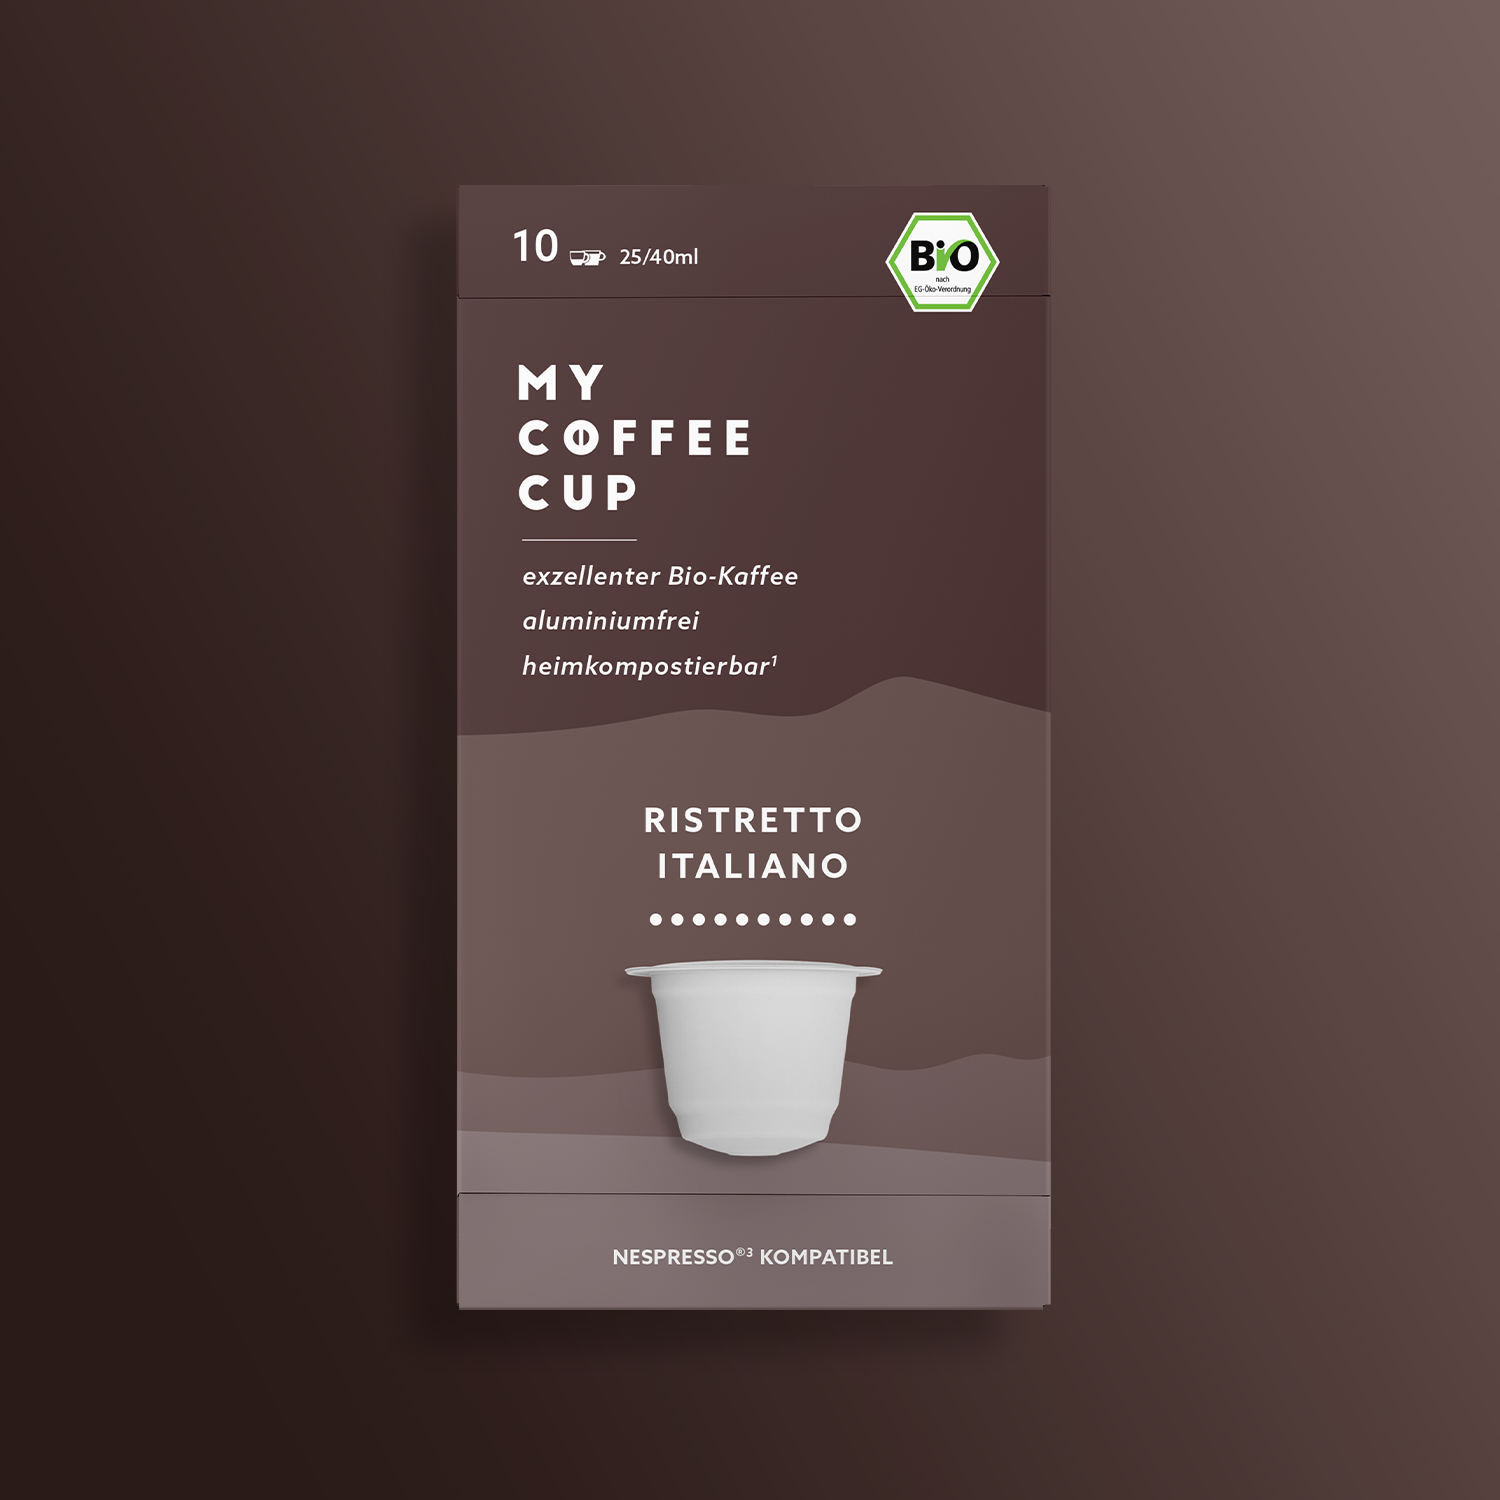 Capsules de café Ristretto Italiano pour Nespresso®³ de MY COFFEE CUP